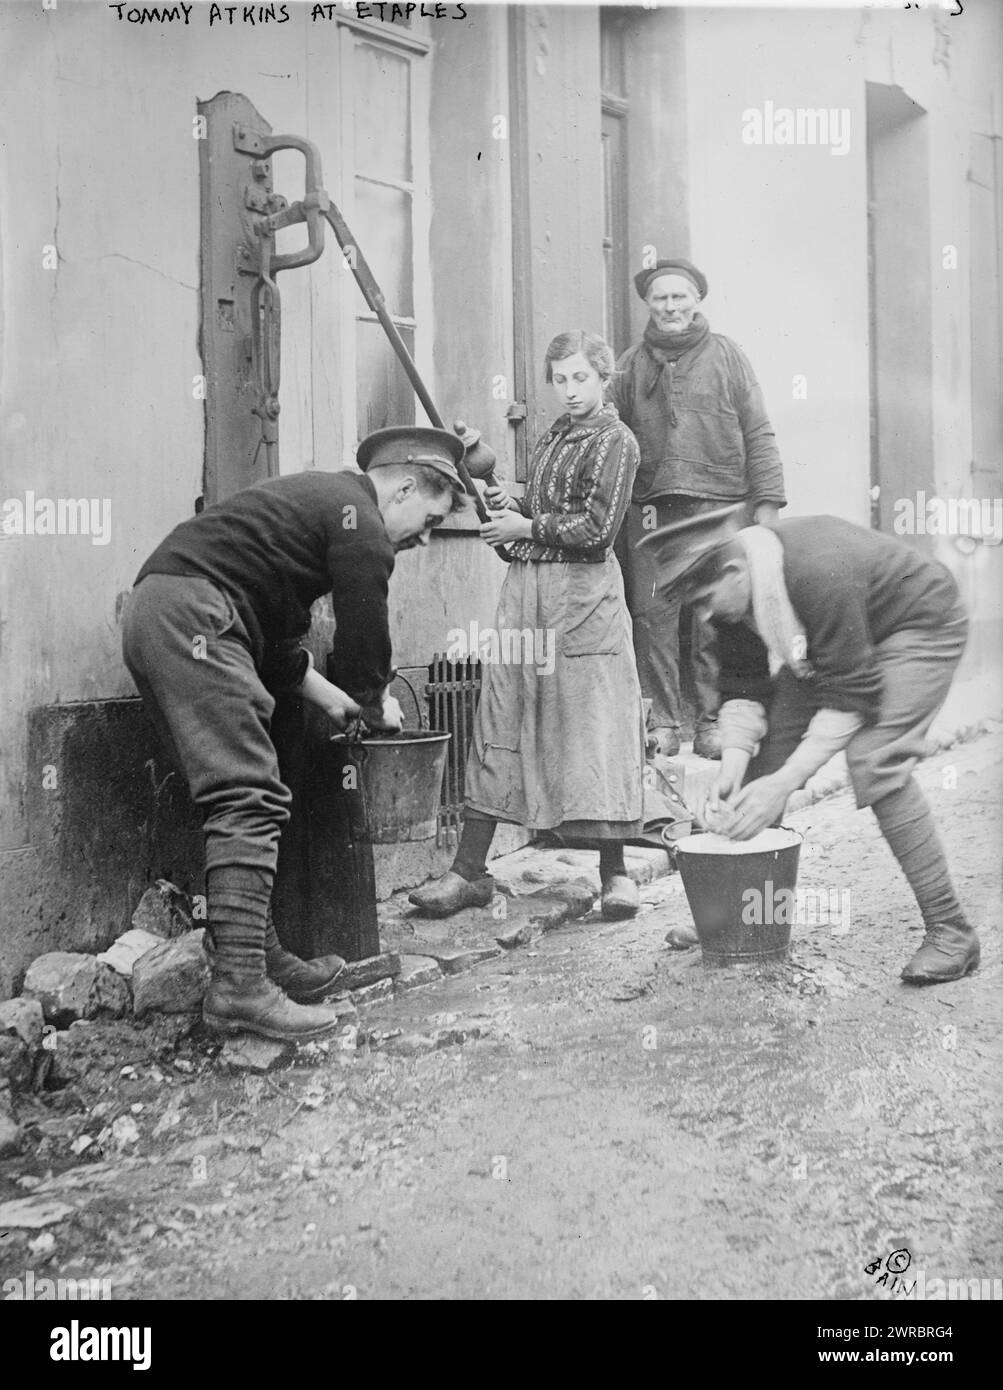 Tommy Atkins in Etaples, Foto zeigt zwei britische Soldaten namens „Tommys“, die einigen Anwohnern während des Ersten Weltkriegs zwischen 1914 und ca. an einer Wasserpumpe in Etaples, Frankreich, helfen. 1915, Weltkrieg, 1914-1918, Glasnegative, 1 negativ: Glas Stockfoto